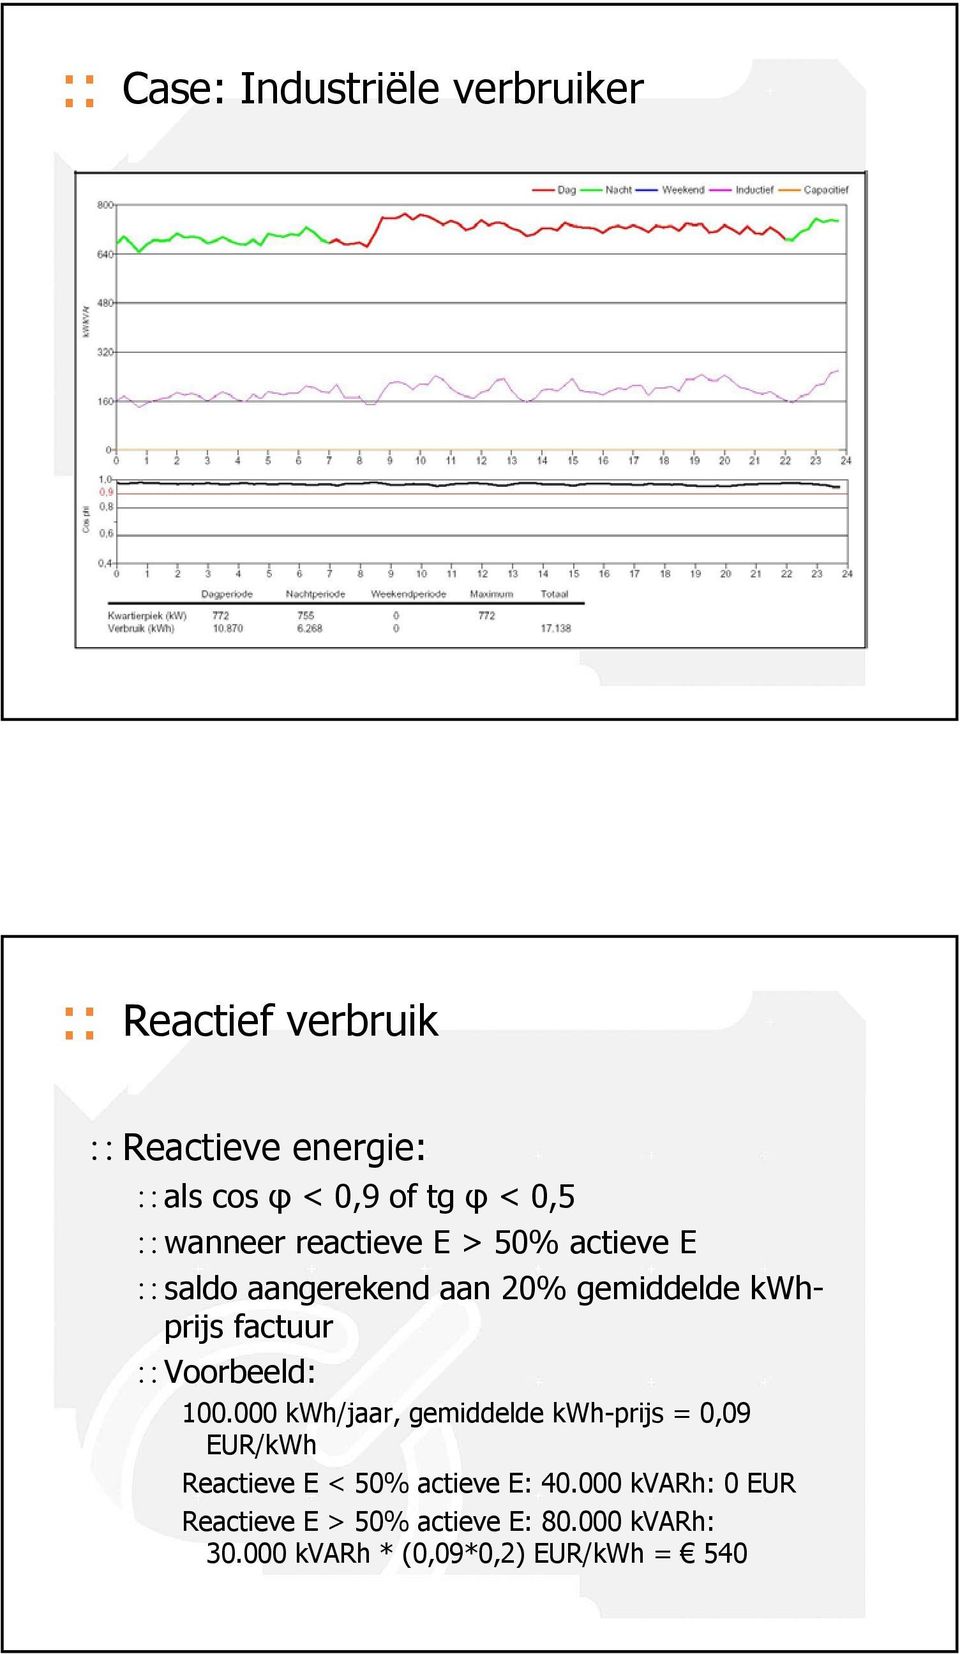 Voorbeeld: 100.000 kwh/jaar, gemiddelde kwh-prijs = 0,09 EUR/kWh Reactieve E < 50% actieve E: 40.